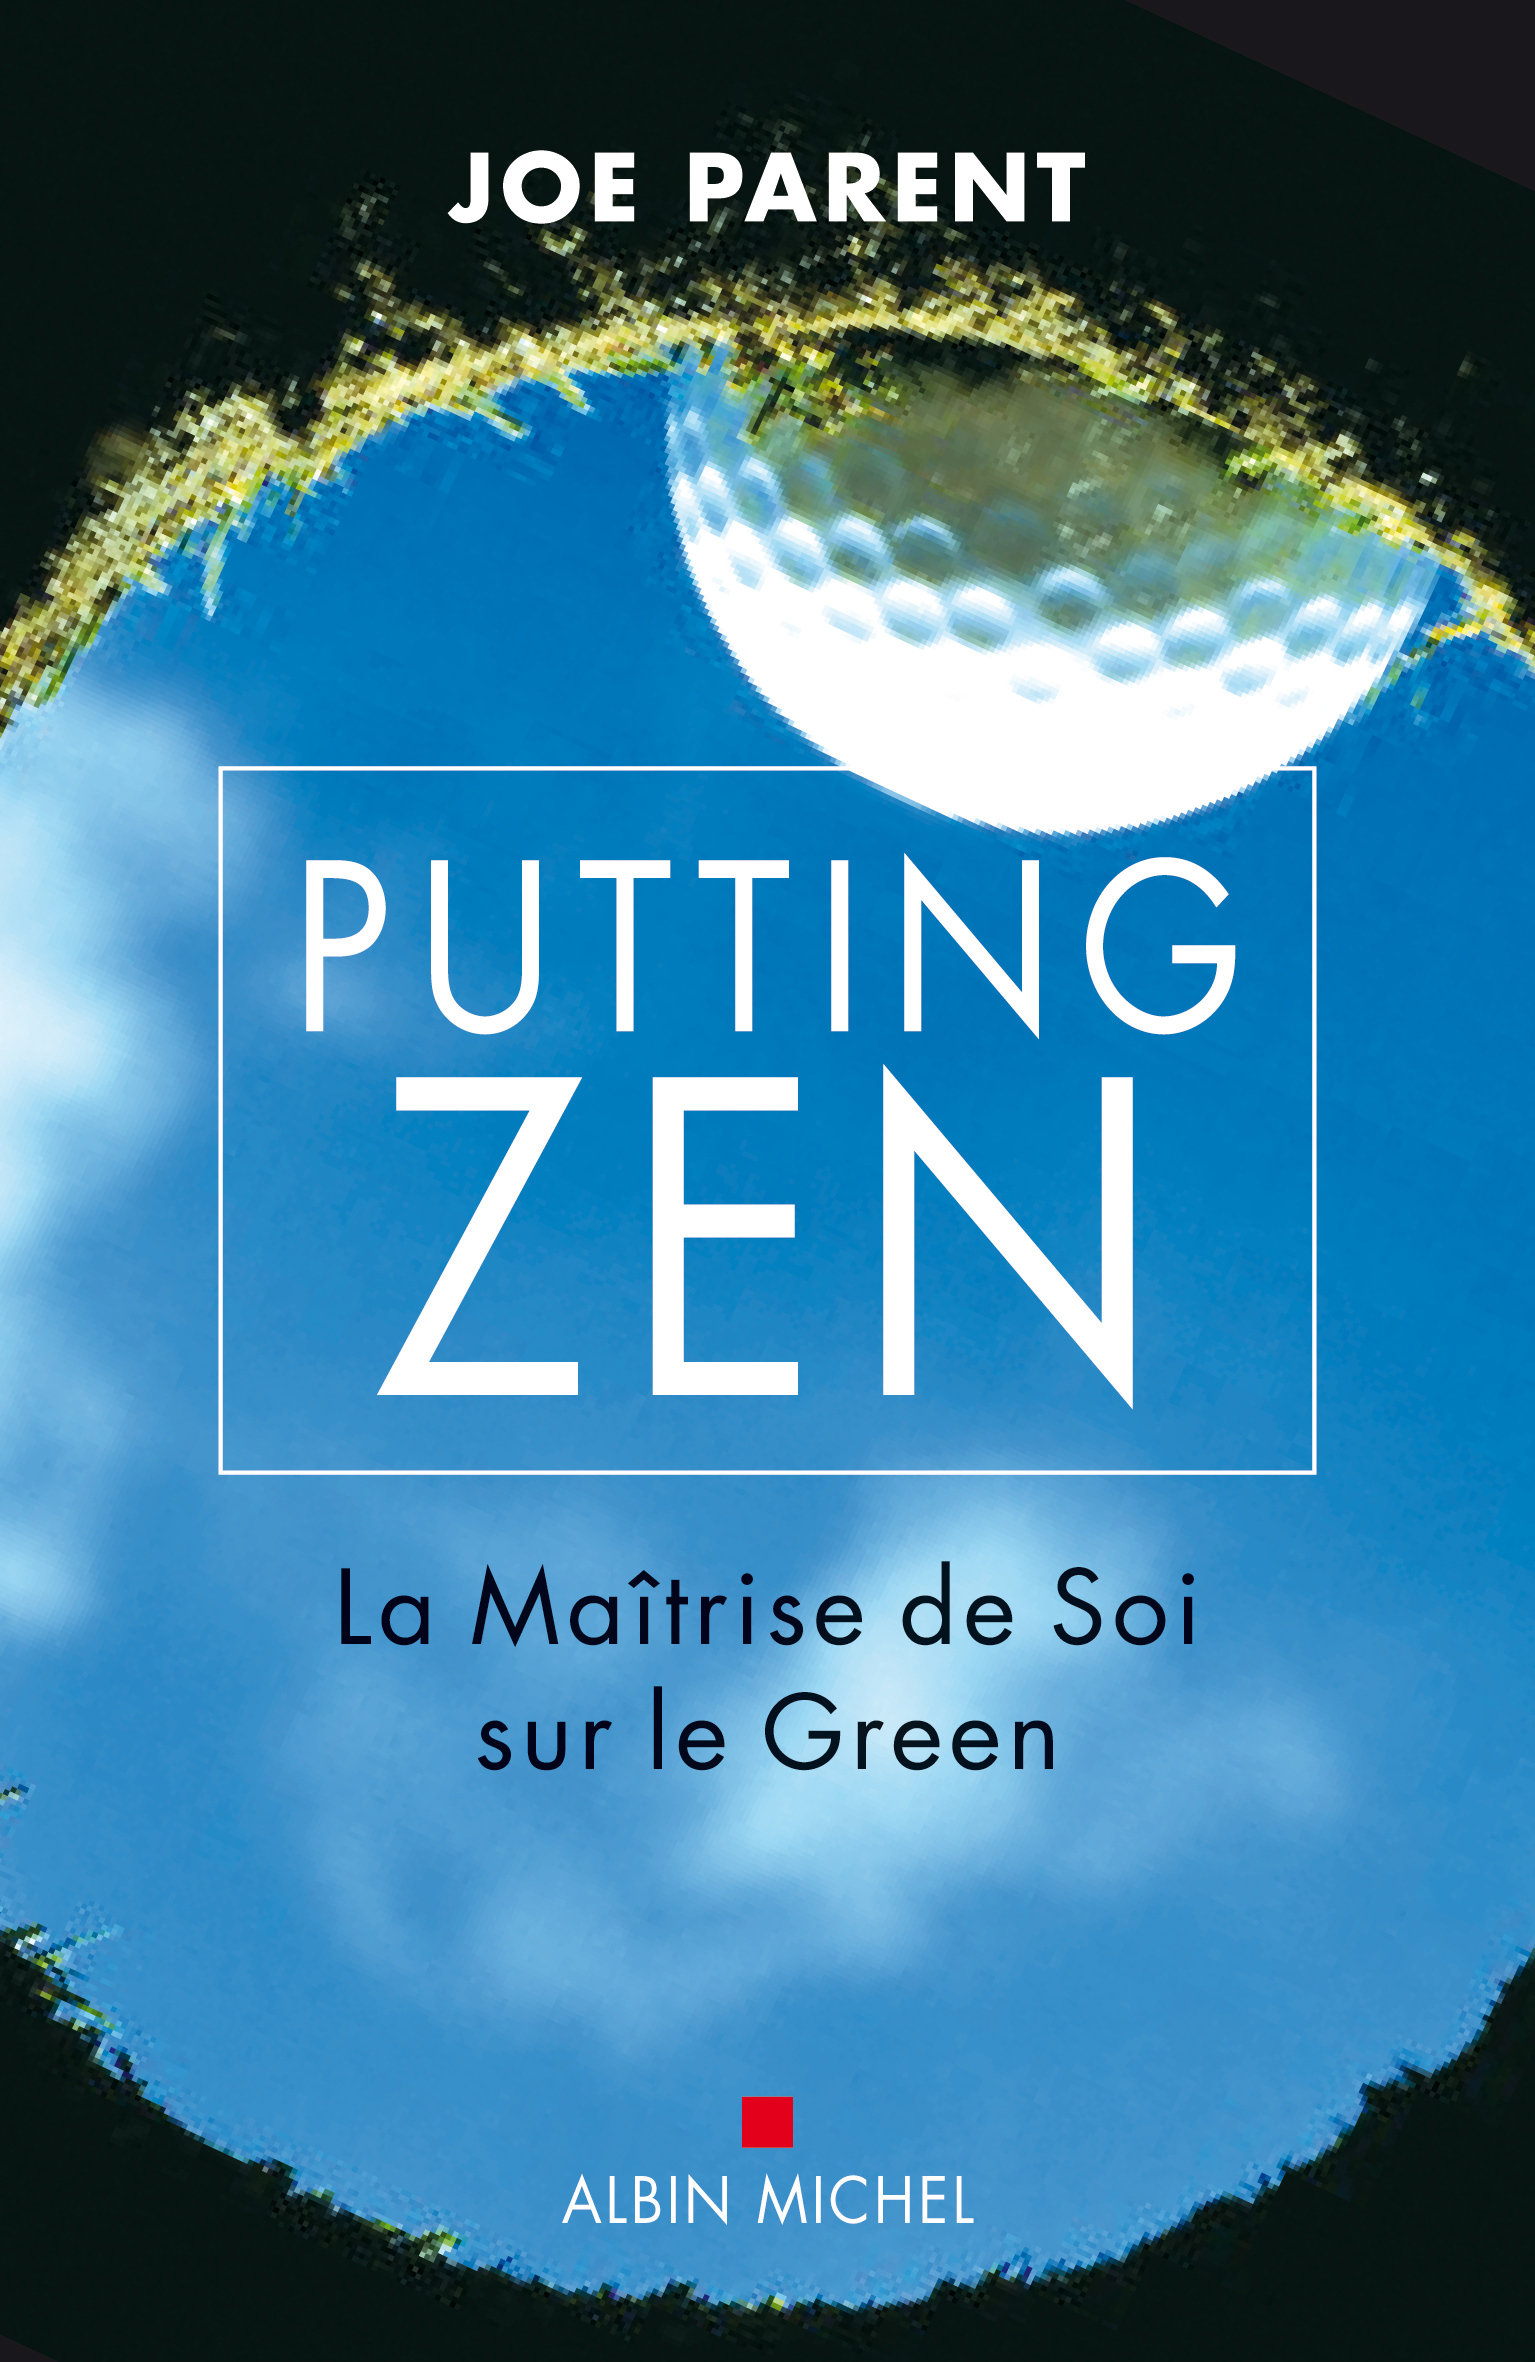 Couverture du livre Putting zen